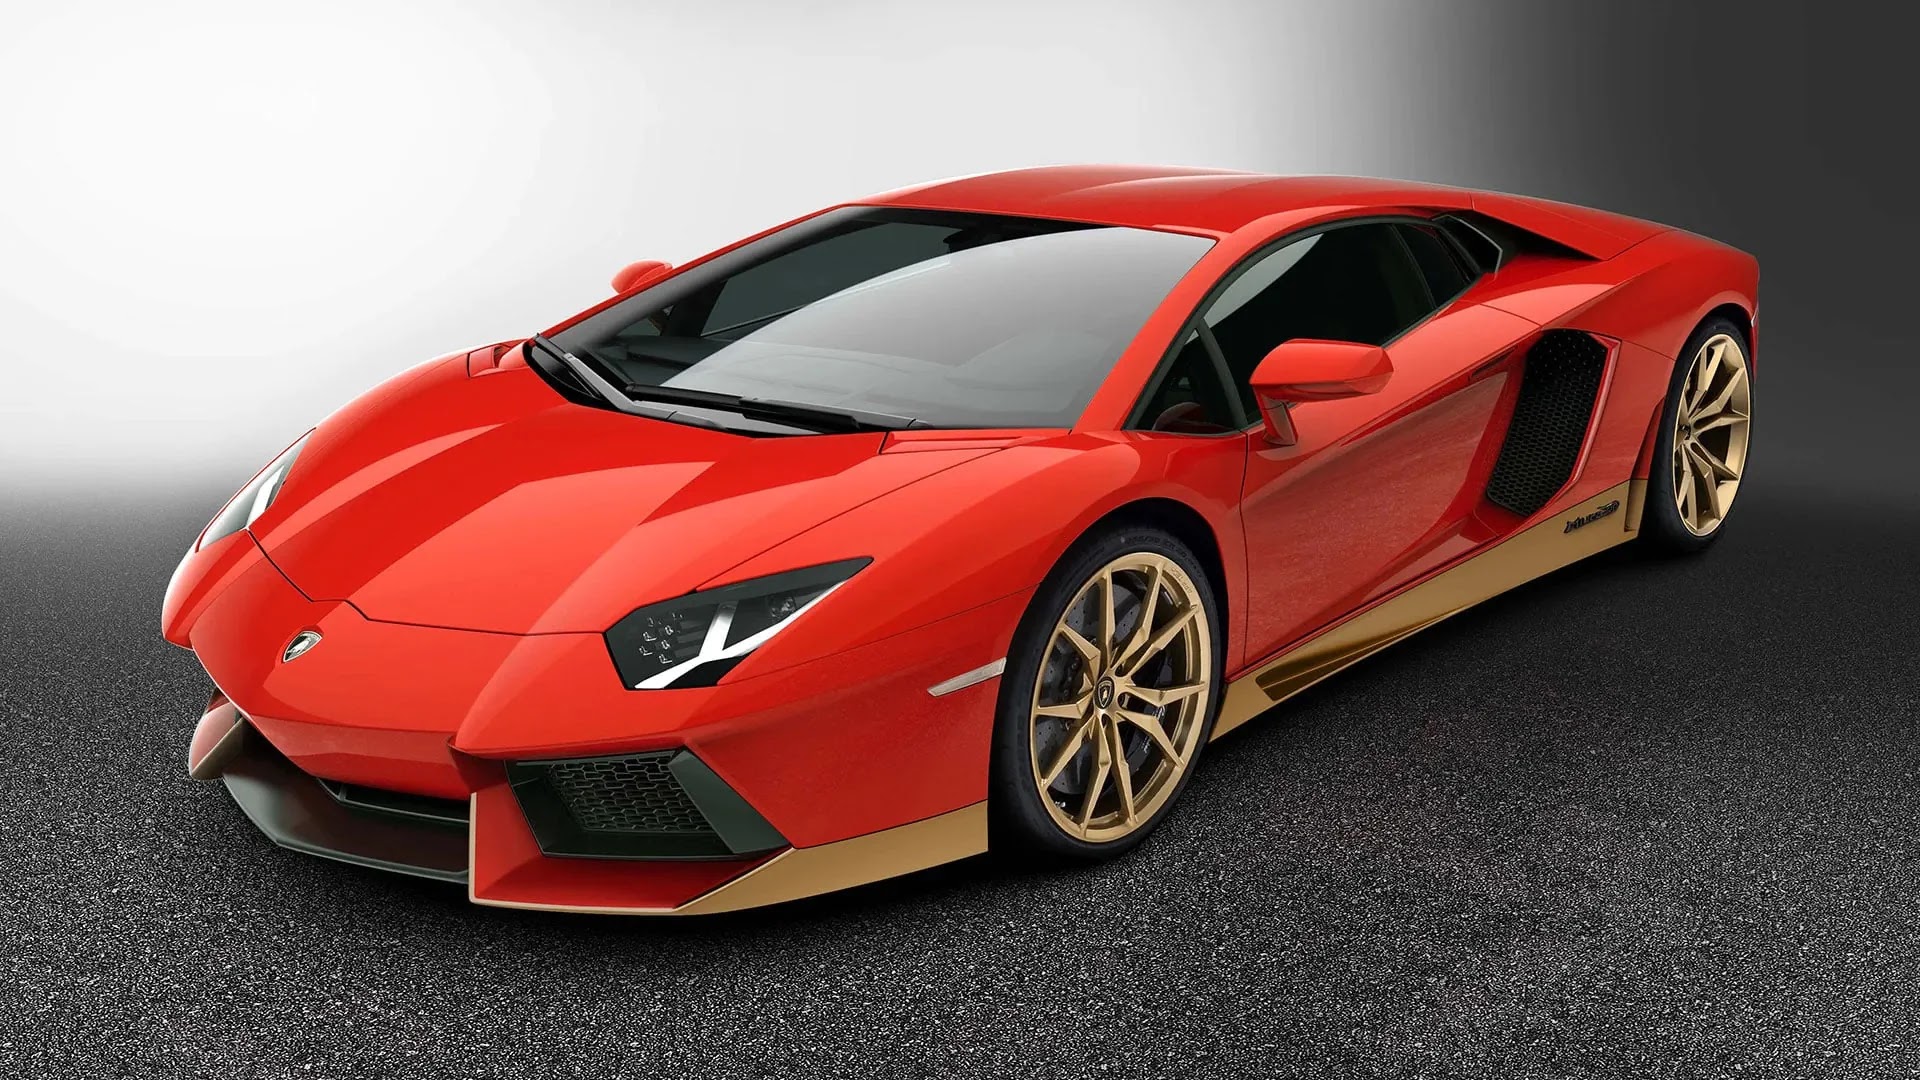 12 Most expensive Lamborghinis in the world: Veneno, Miura or